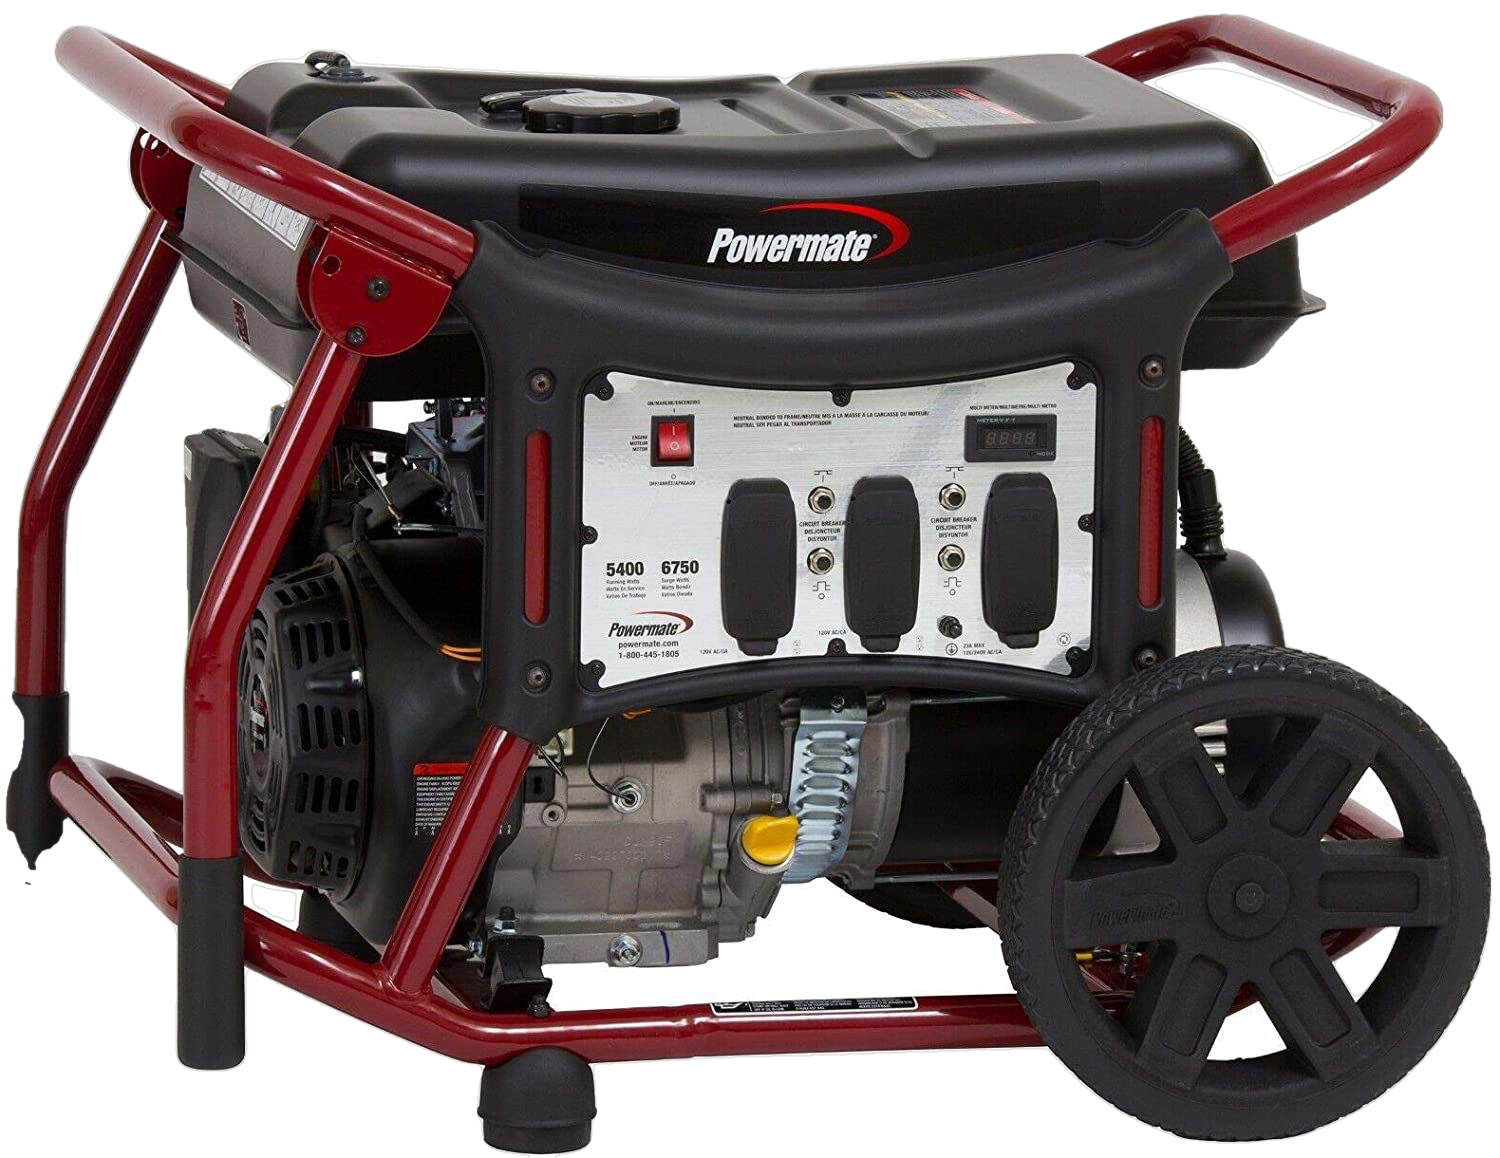 Powermate, Powermate WX5400 5400W/6750W Gas Portable Generator New